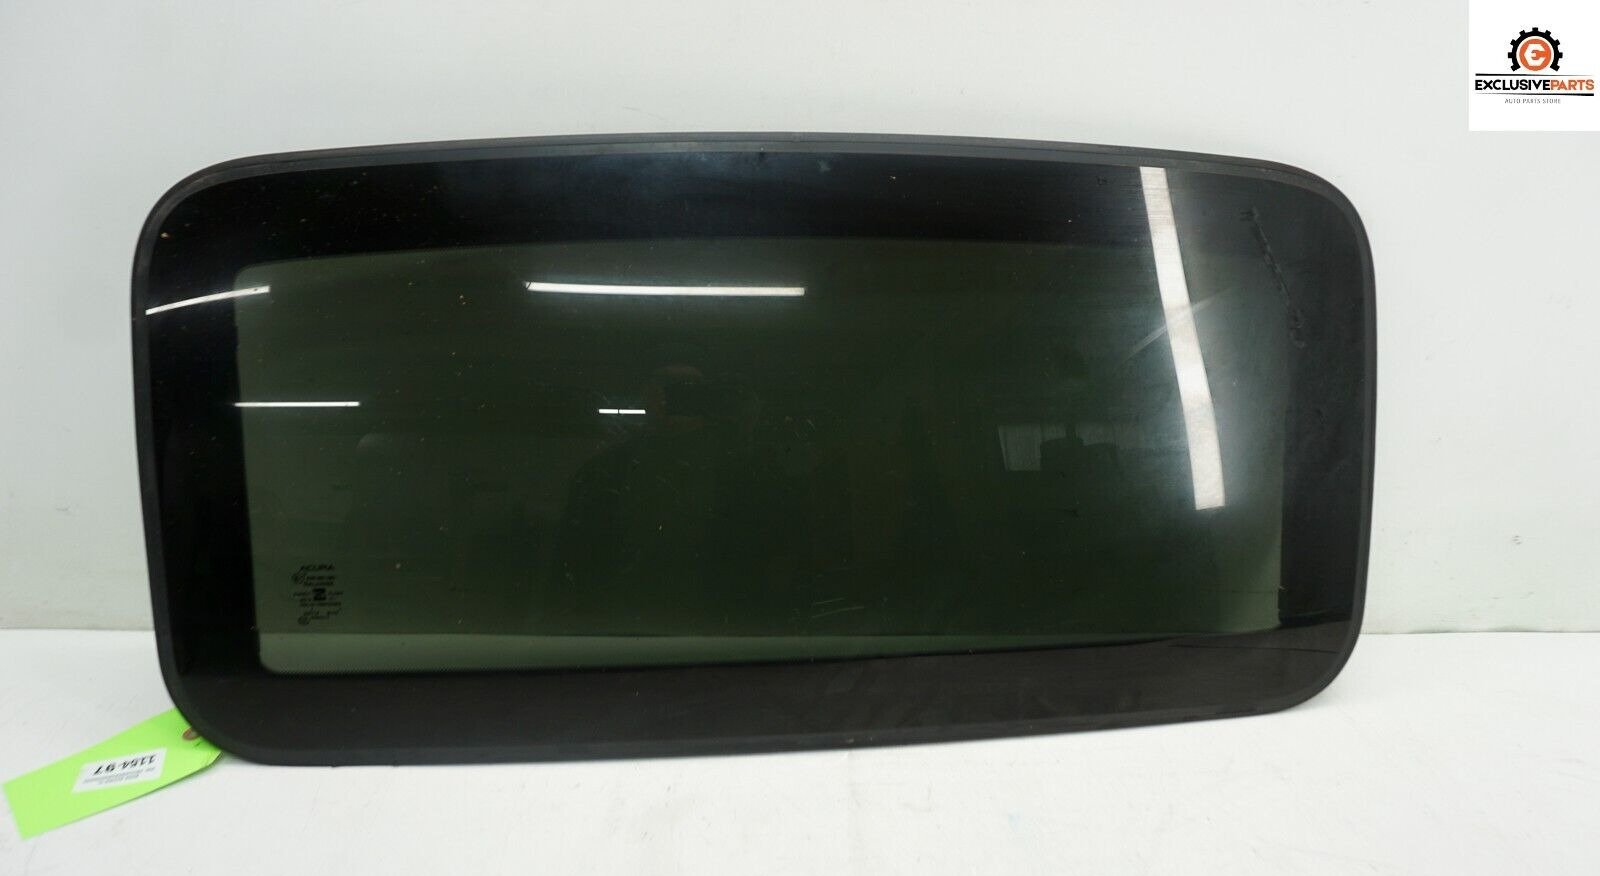 04-08 Acura TL Sedan OEM Sunroof Sun Roof Moon Roof Glass 70200-SEP-A21 1154